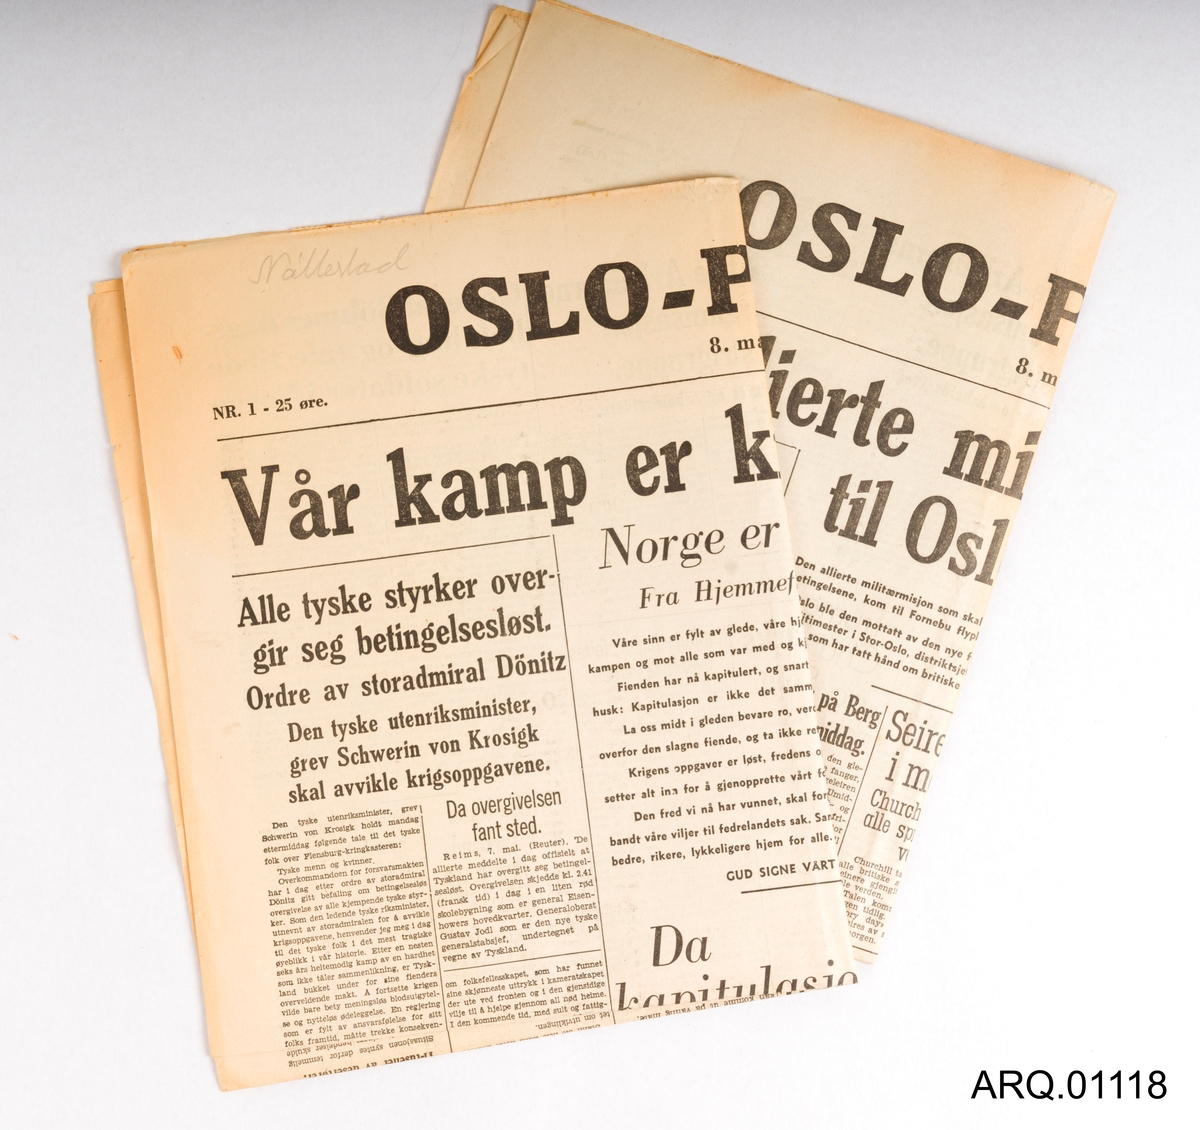 To stykk aviser fra Oslo-Pressen. Nr. 1 og Nr. 2, 8. mai 1945. "Vår kamp er kronet med seier." og "Den allierte militærmisjon kom til Oslo i dag." Avisene har artikler rundt temaet friegjøringen og det som har skjedd dagene før 8. mai. 25 øre.